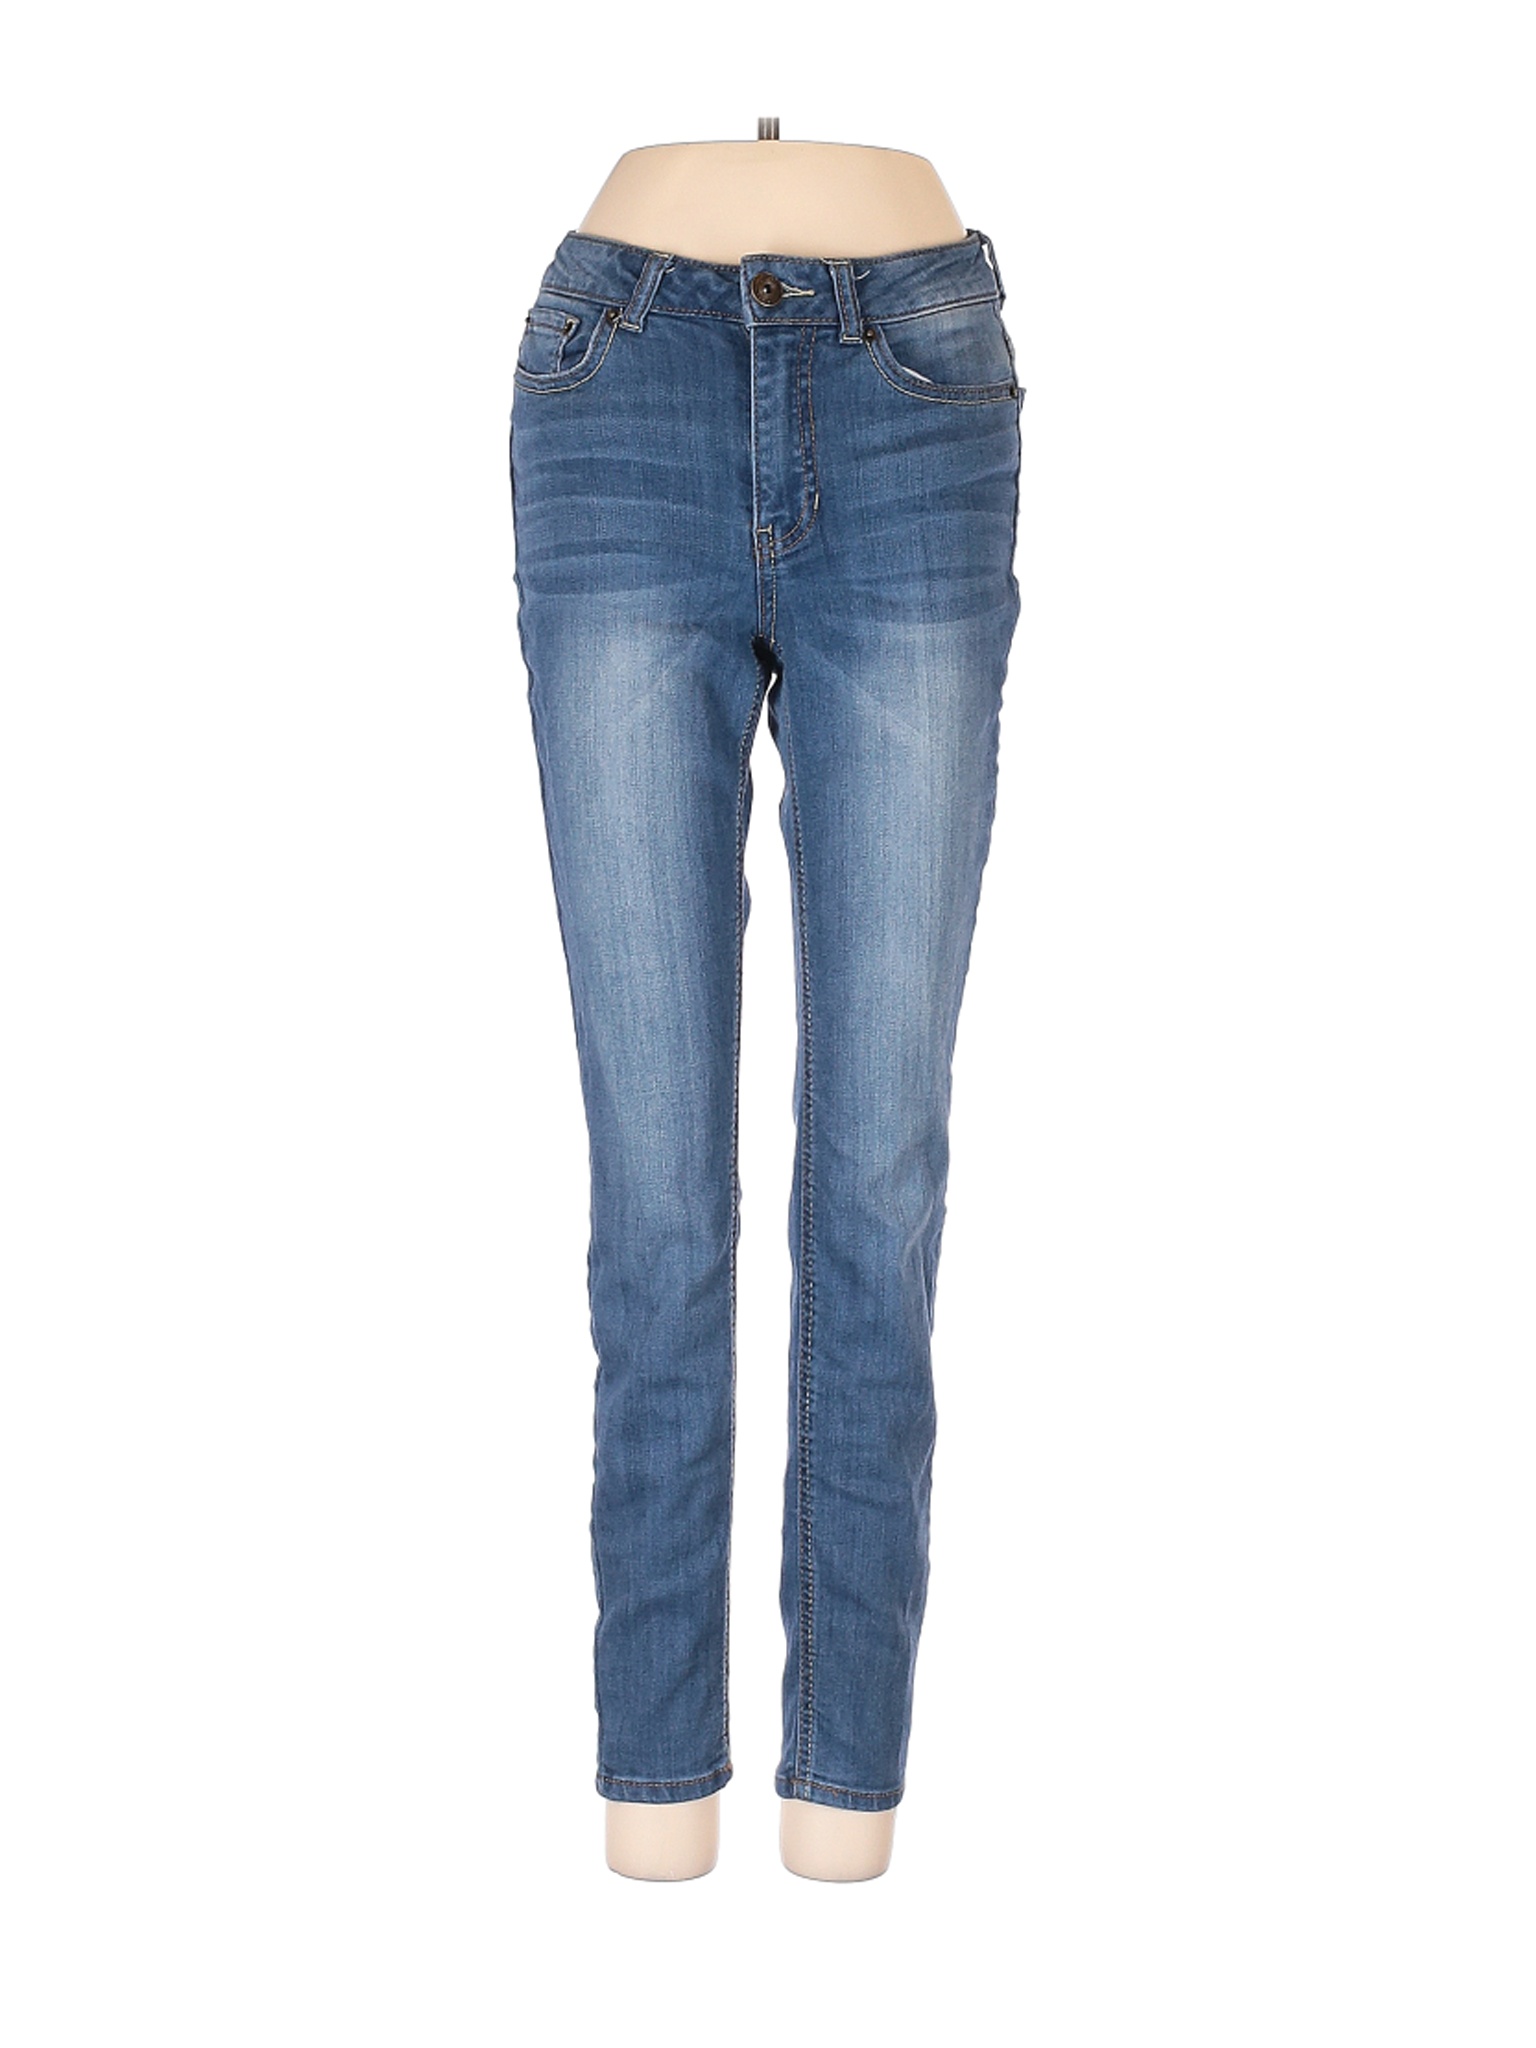 Rue21 Women Blue Jeans 0 | eBay